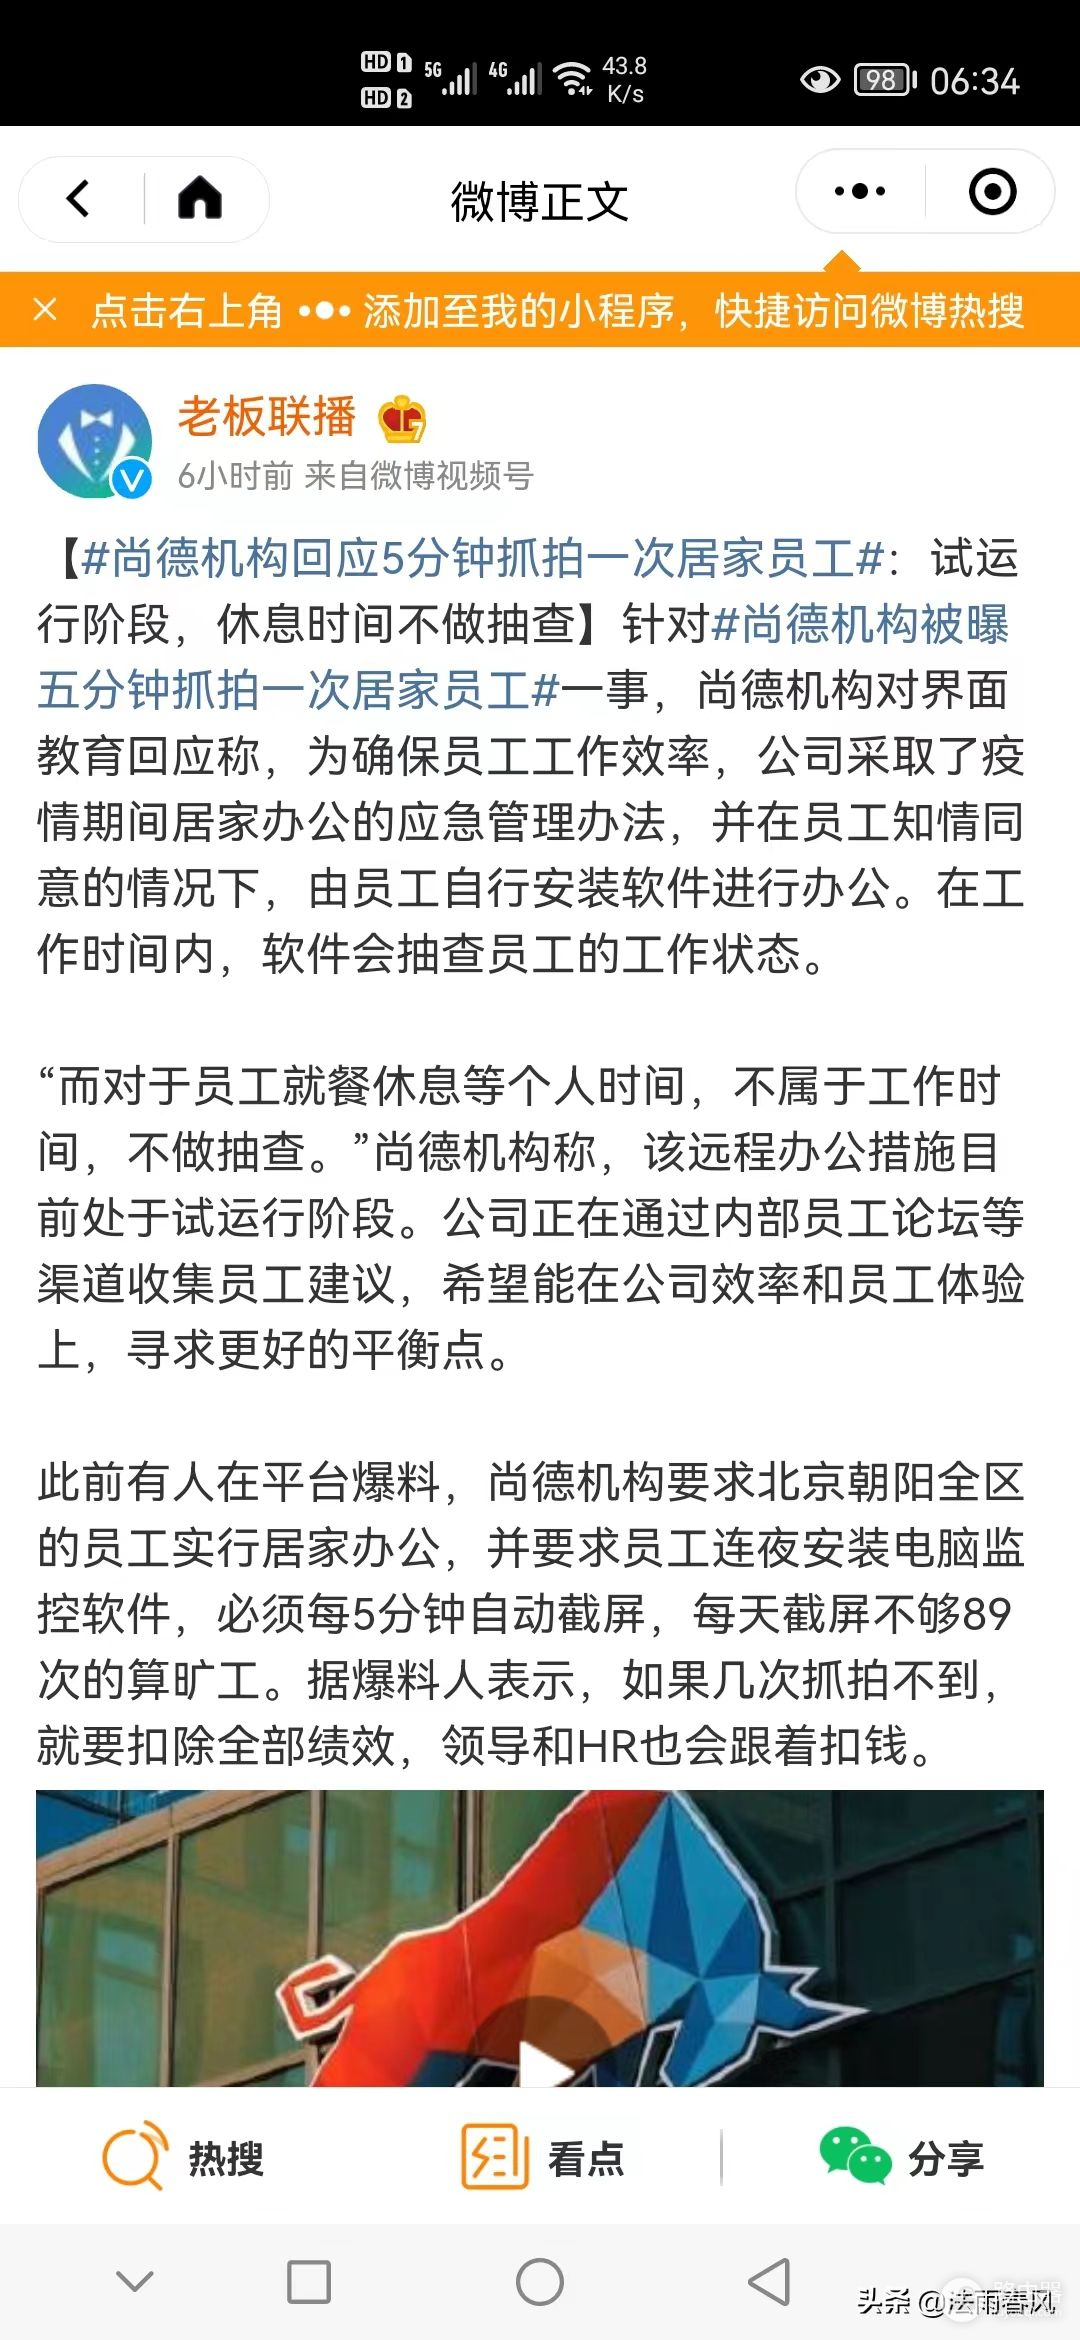 尚德机构对北京朝阳区员工5分钟抓拍一次，涉及什么法律问题呢？